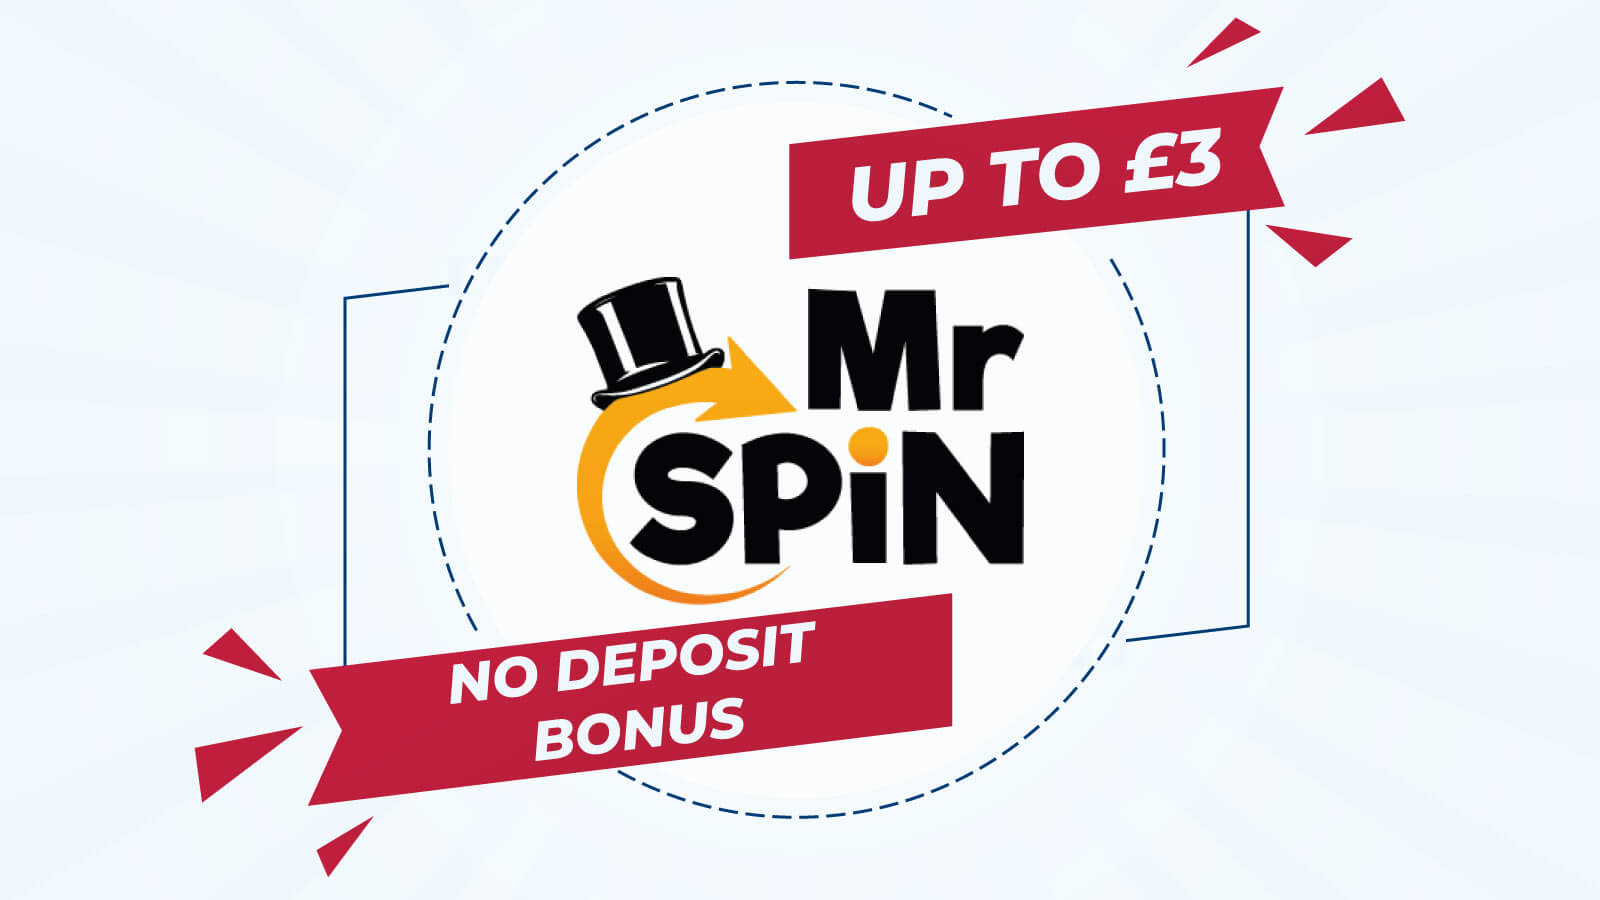 Up To £3 No Deposit Bonus at Mr Spin